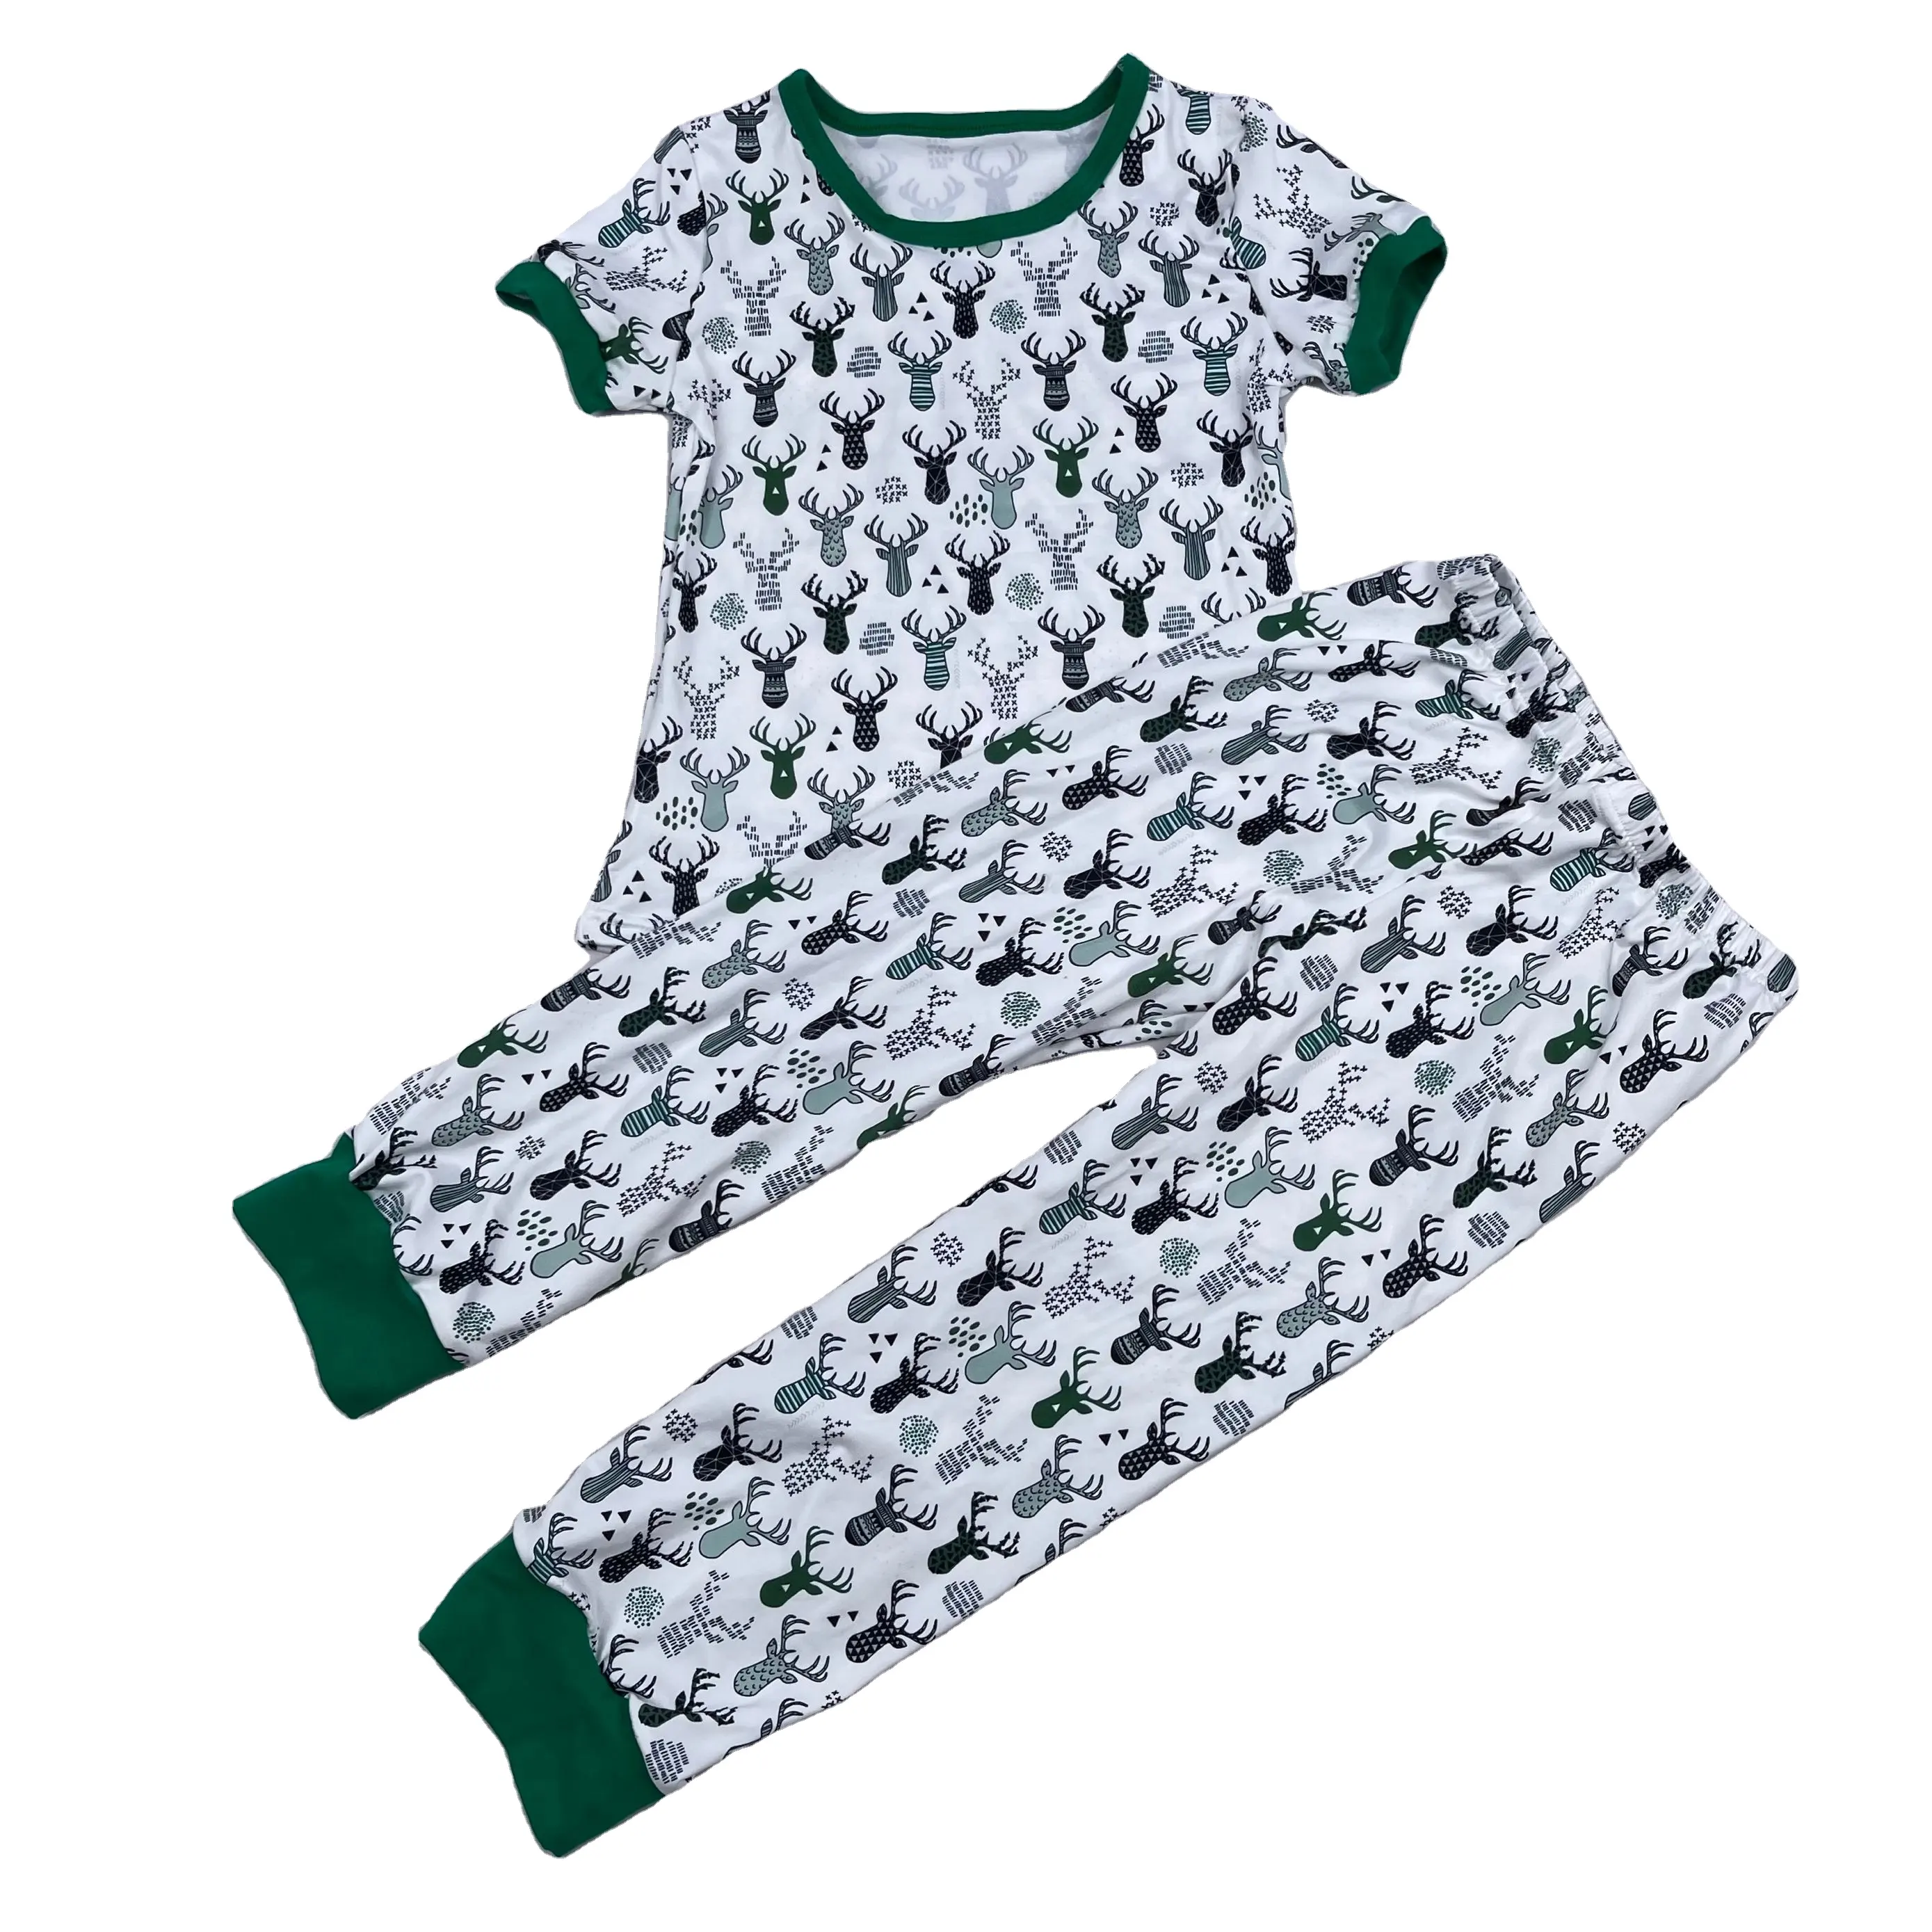 Vêtements boutique de noël pour garçons, tenues pour enfants, habits, usine, OEM, collection 2019, S52810